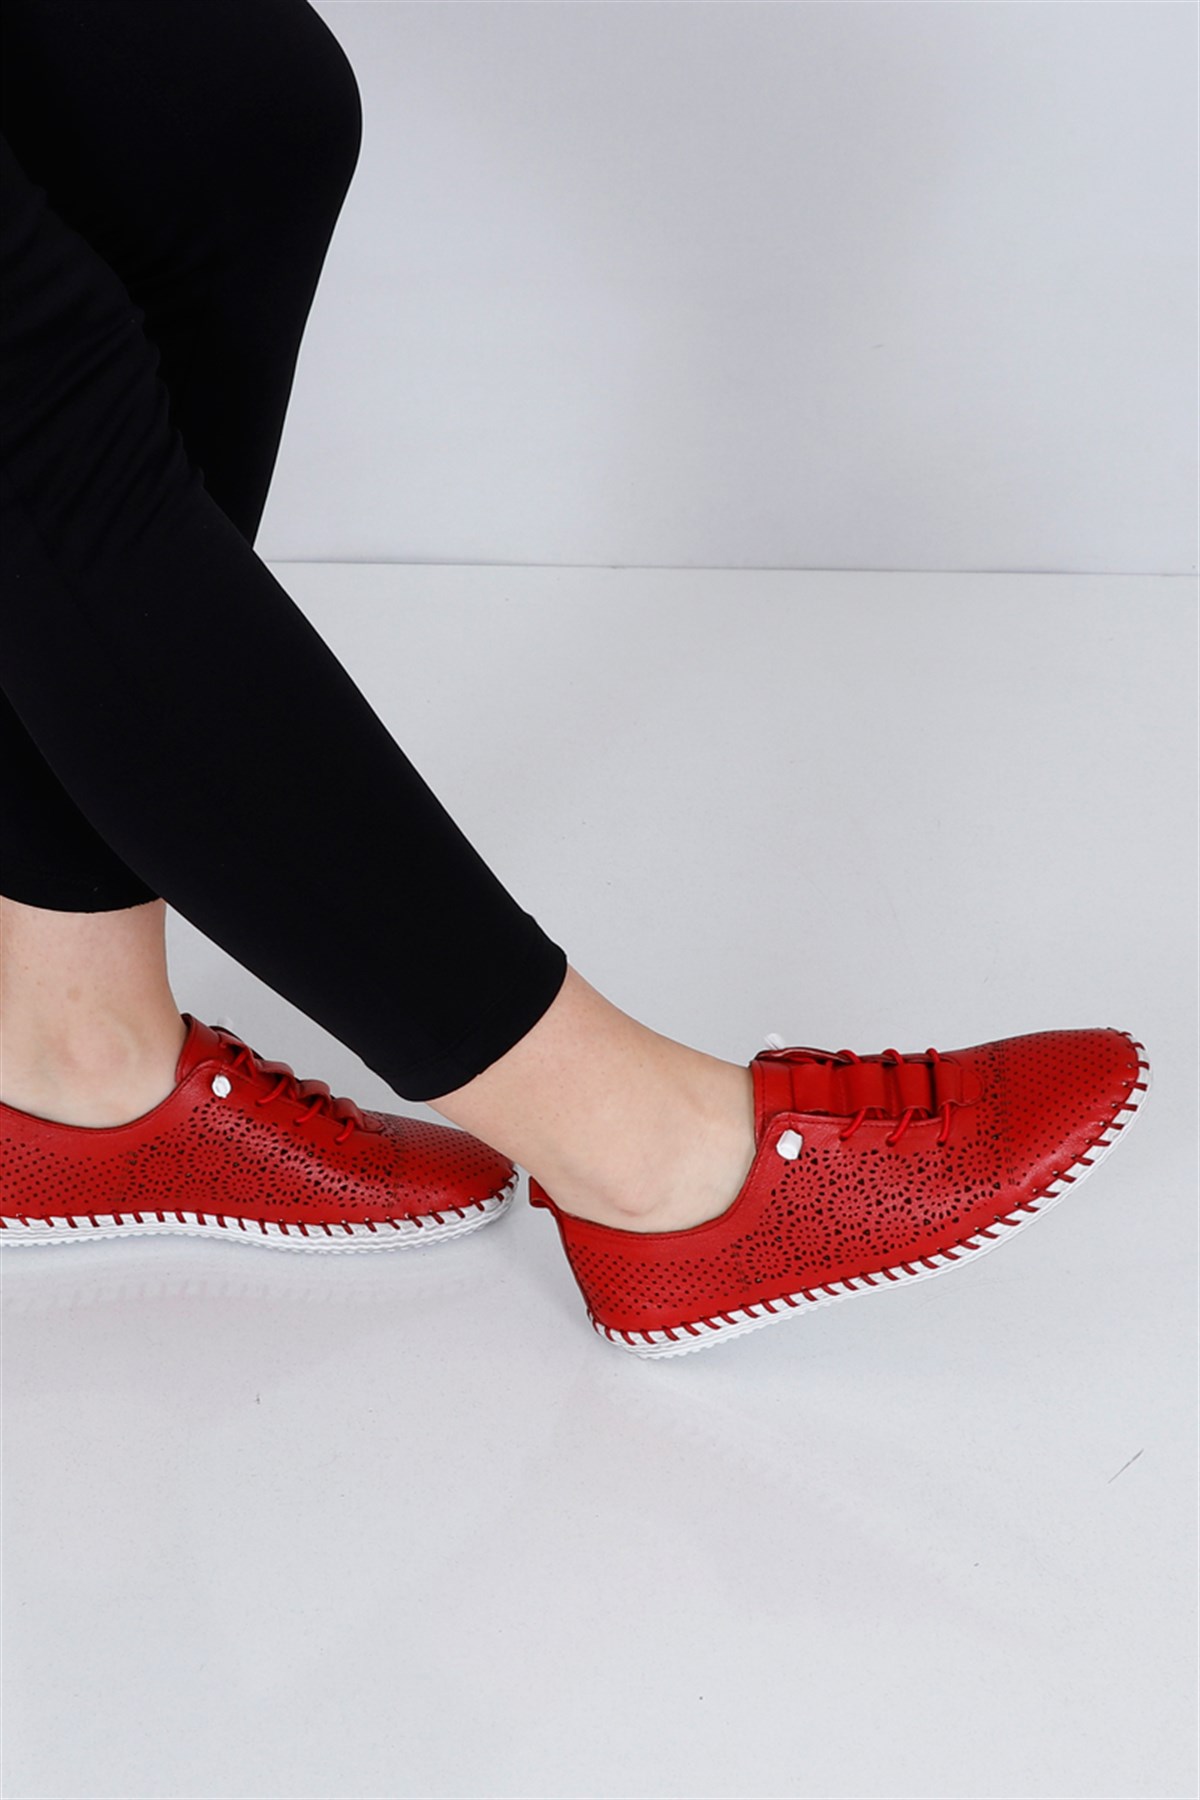 Kırmızı Deri Düz Taban Bağlı Kadın Babet Ayakkabı 102 Fiyatı ve Modelleri